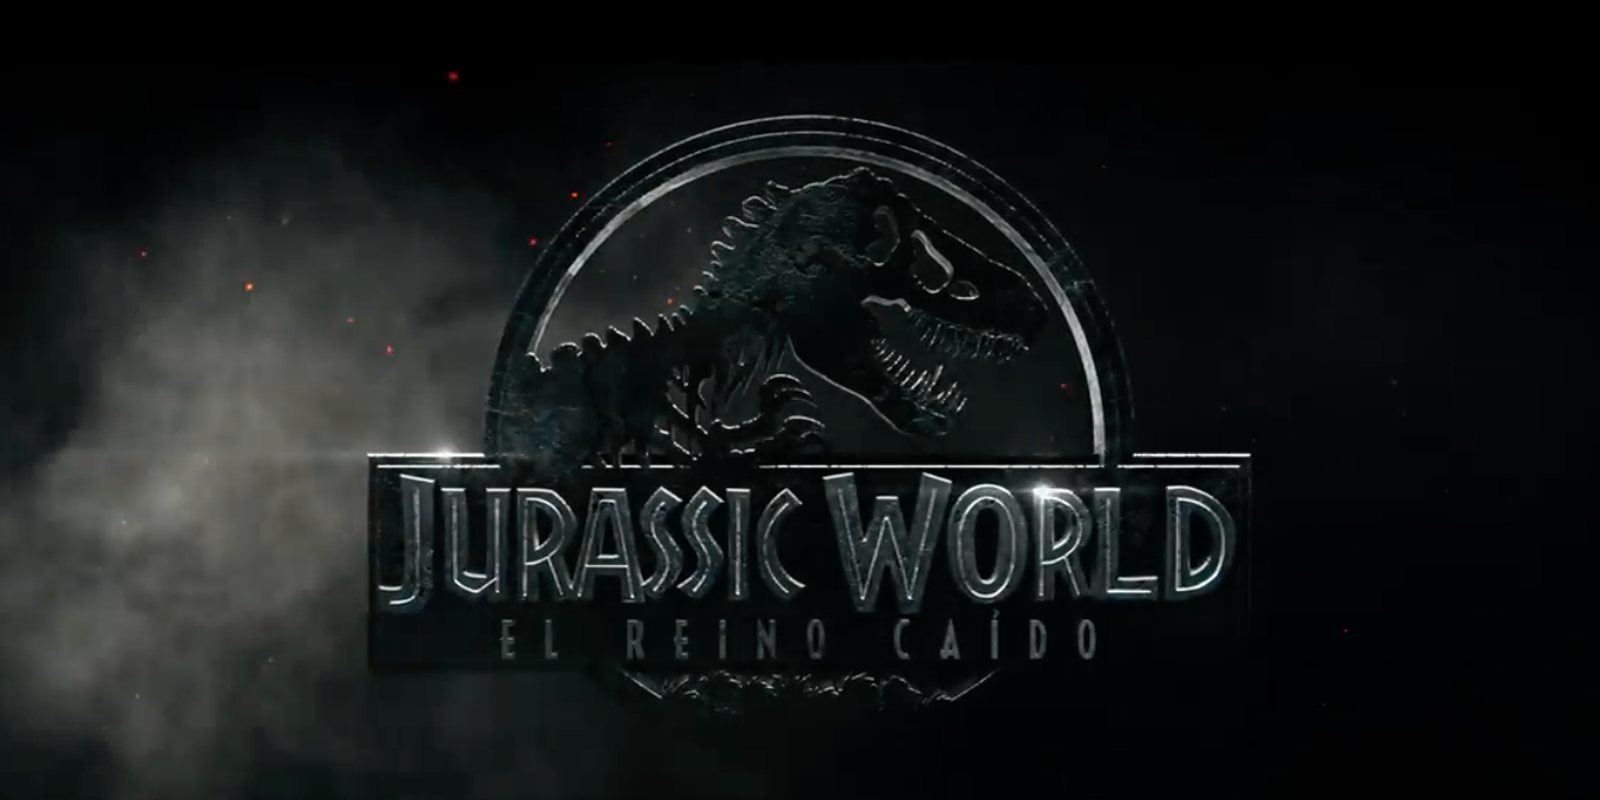 'Jurassic World: El reino caído' se mantiene con fuerza en la taquilla española